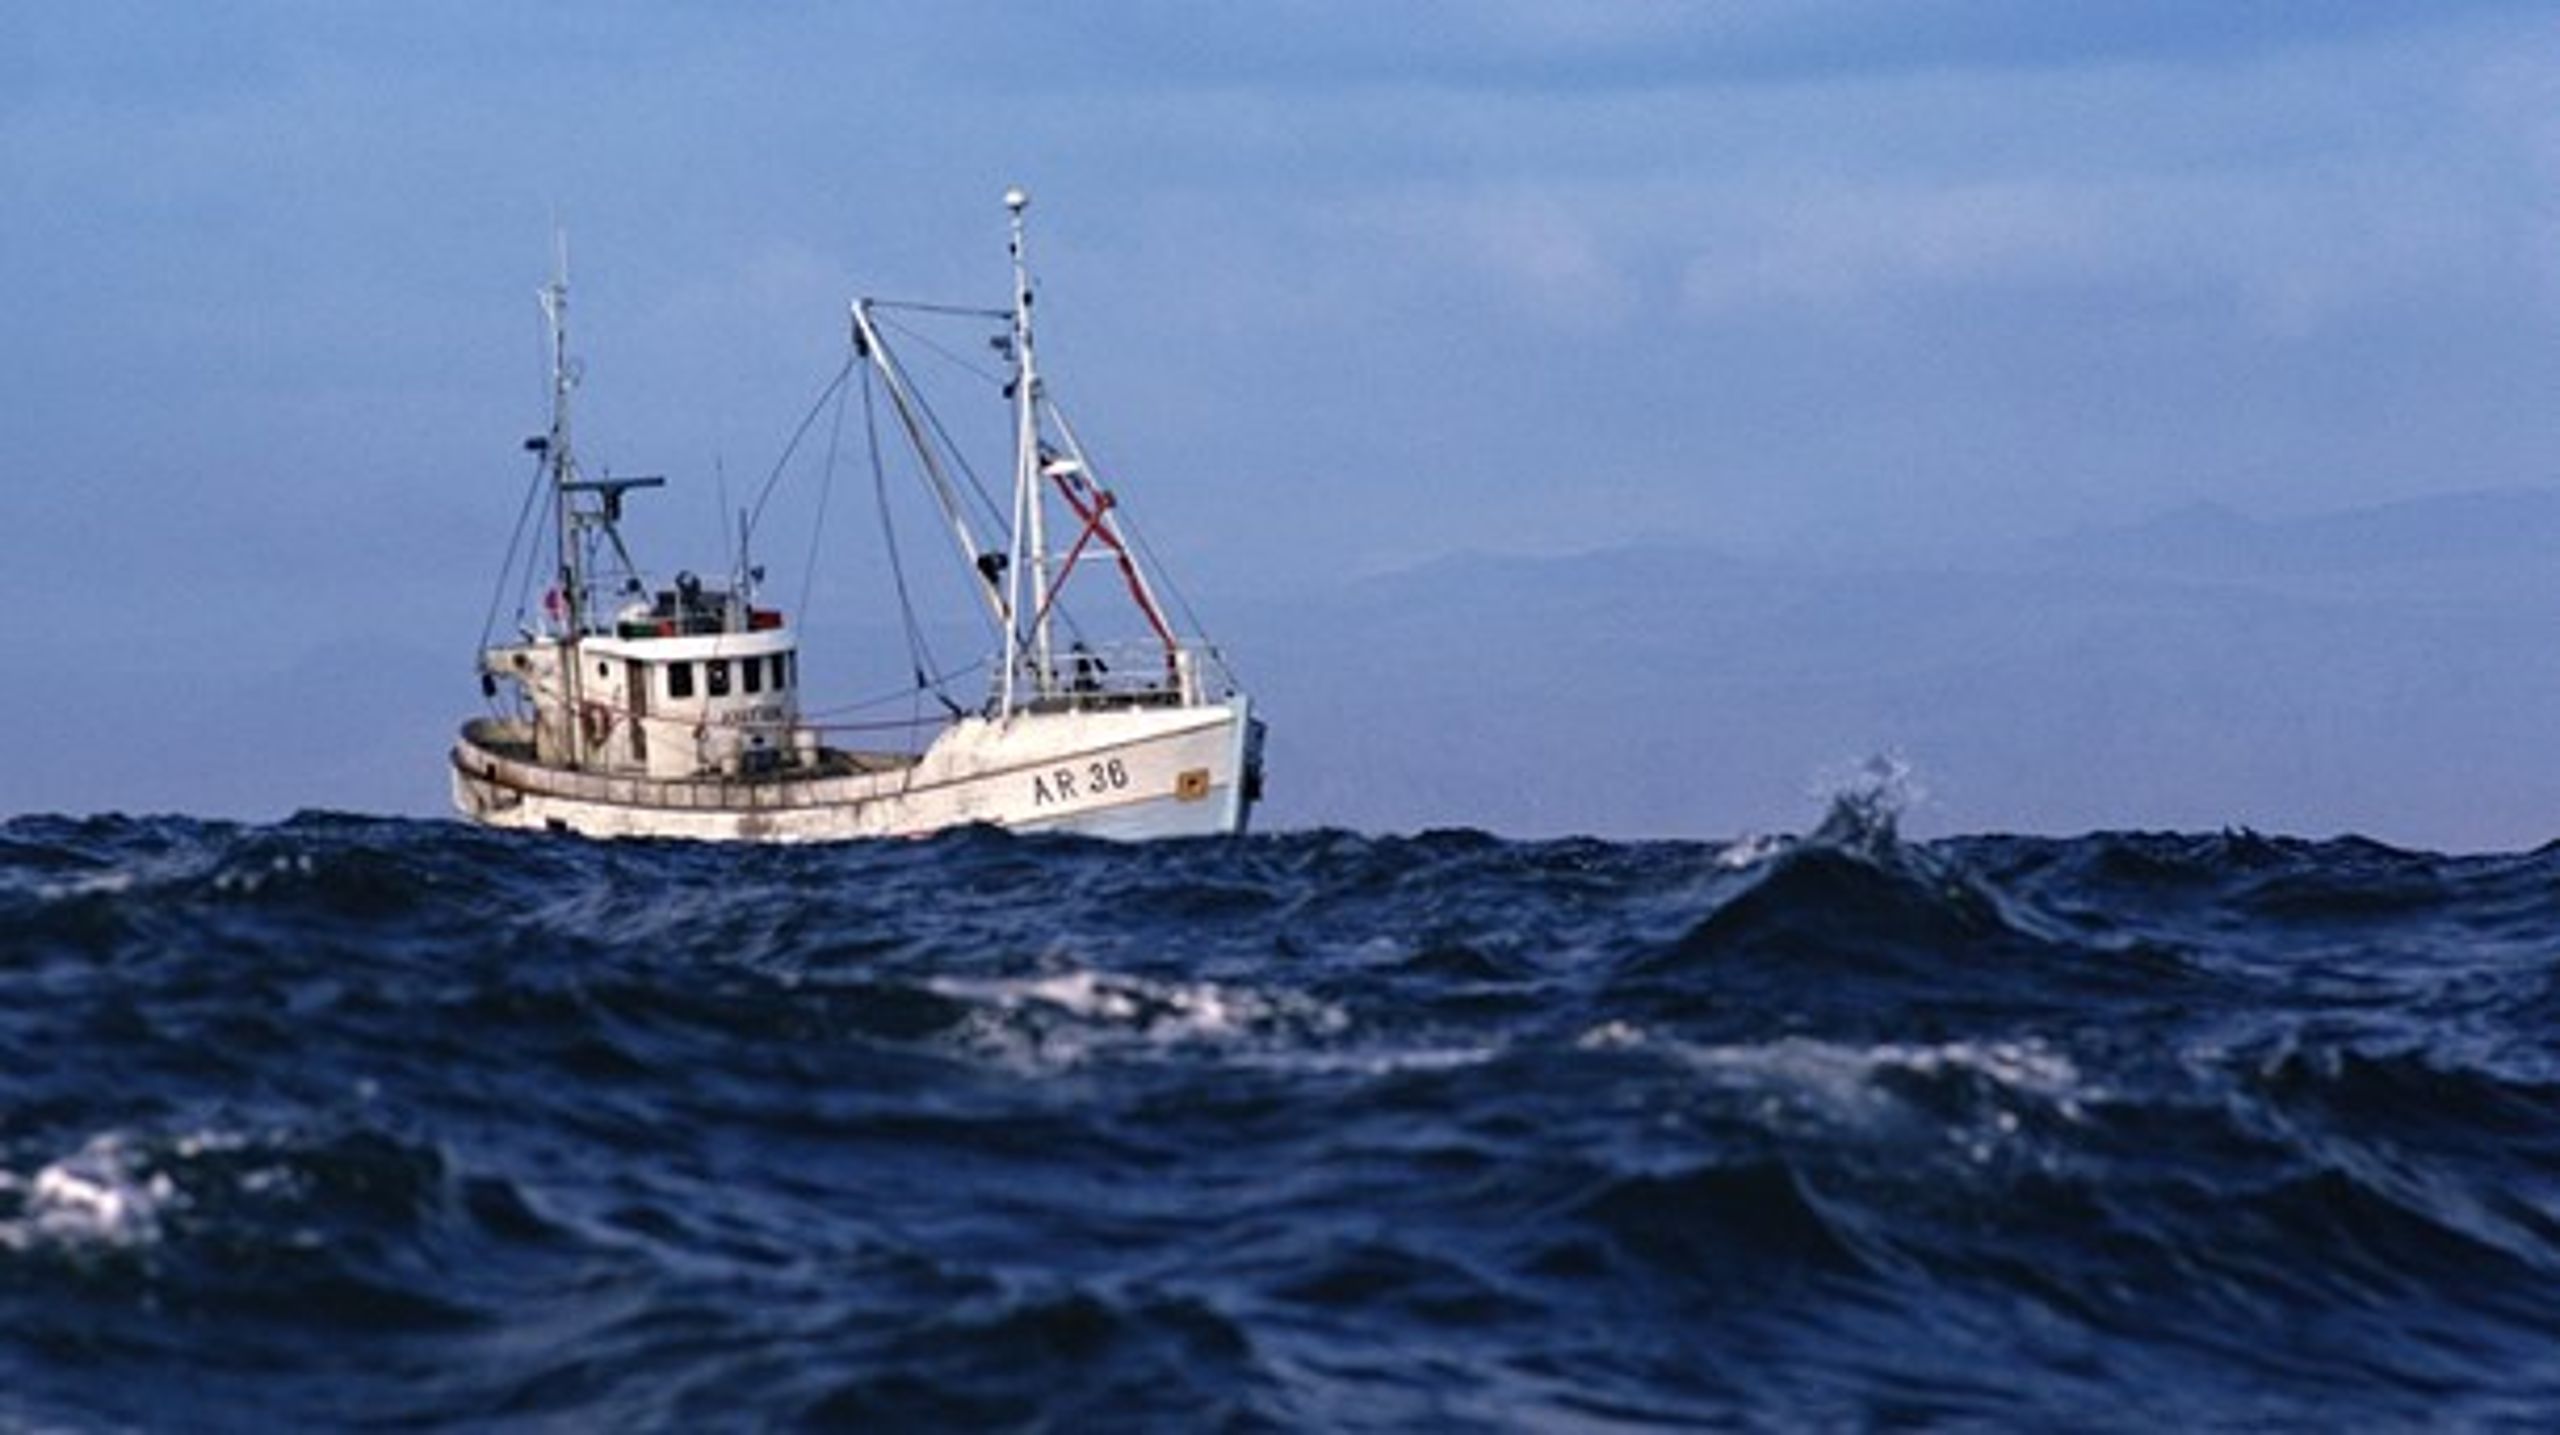 Fra Engeland til Skotland ... Danske fiskere frygter at tabe en tredjedel af deres årlige fangster, hvis de ikke må fiske i britisk farvand efter Brexit. Hør hvorfor i ugens europæiske podcast.